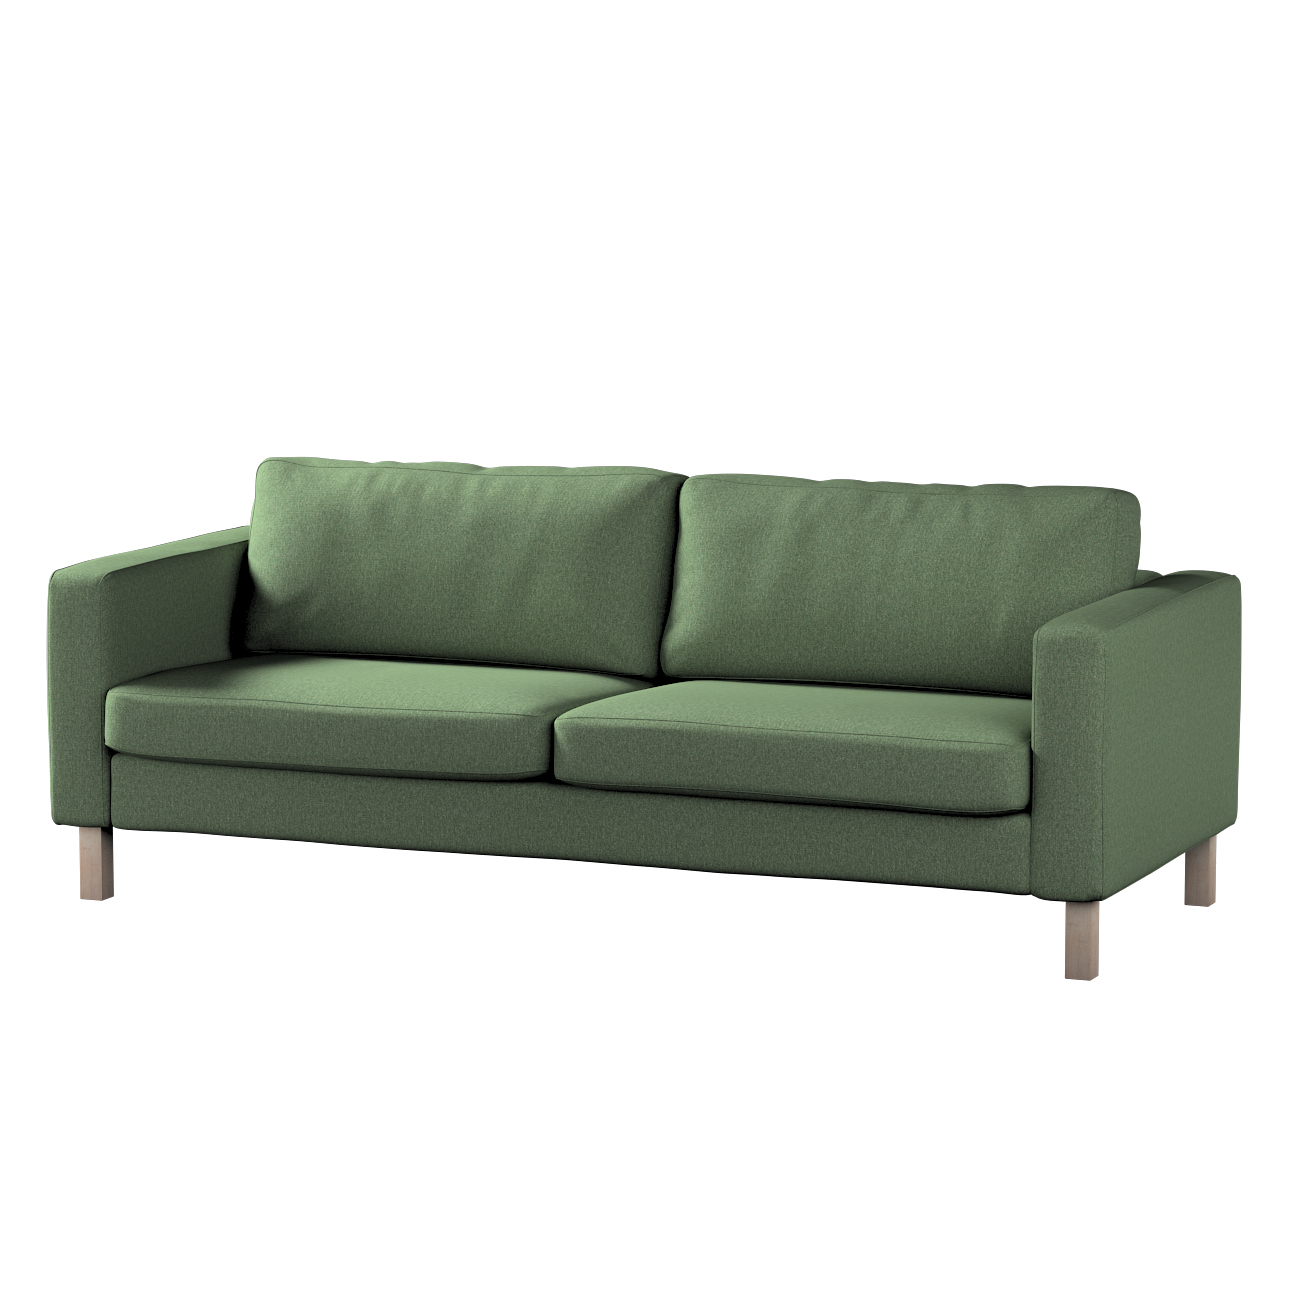 Bezug für Karlstad 3-Sitzer Sofa nicht ausklappbar, kurz, grün, Bezug für K günstig online kaufen